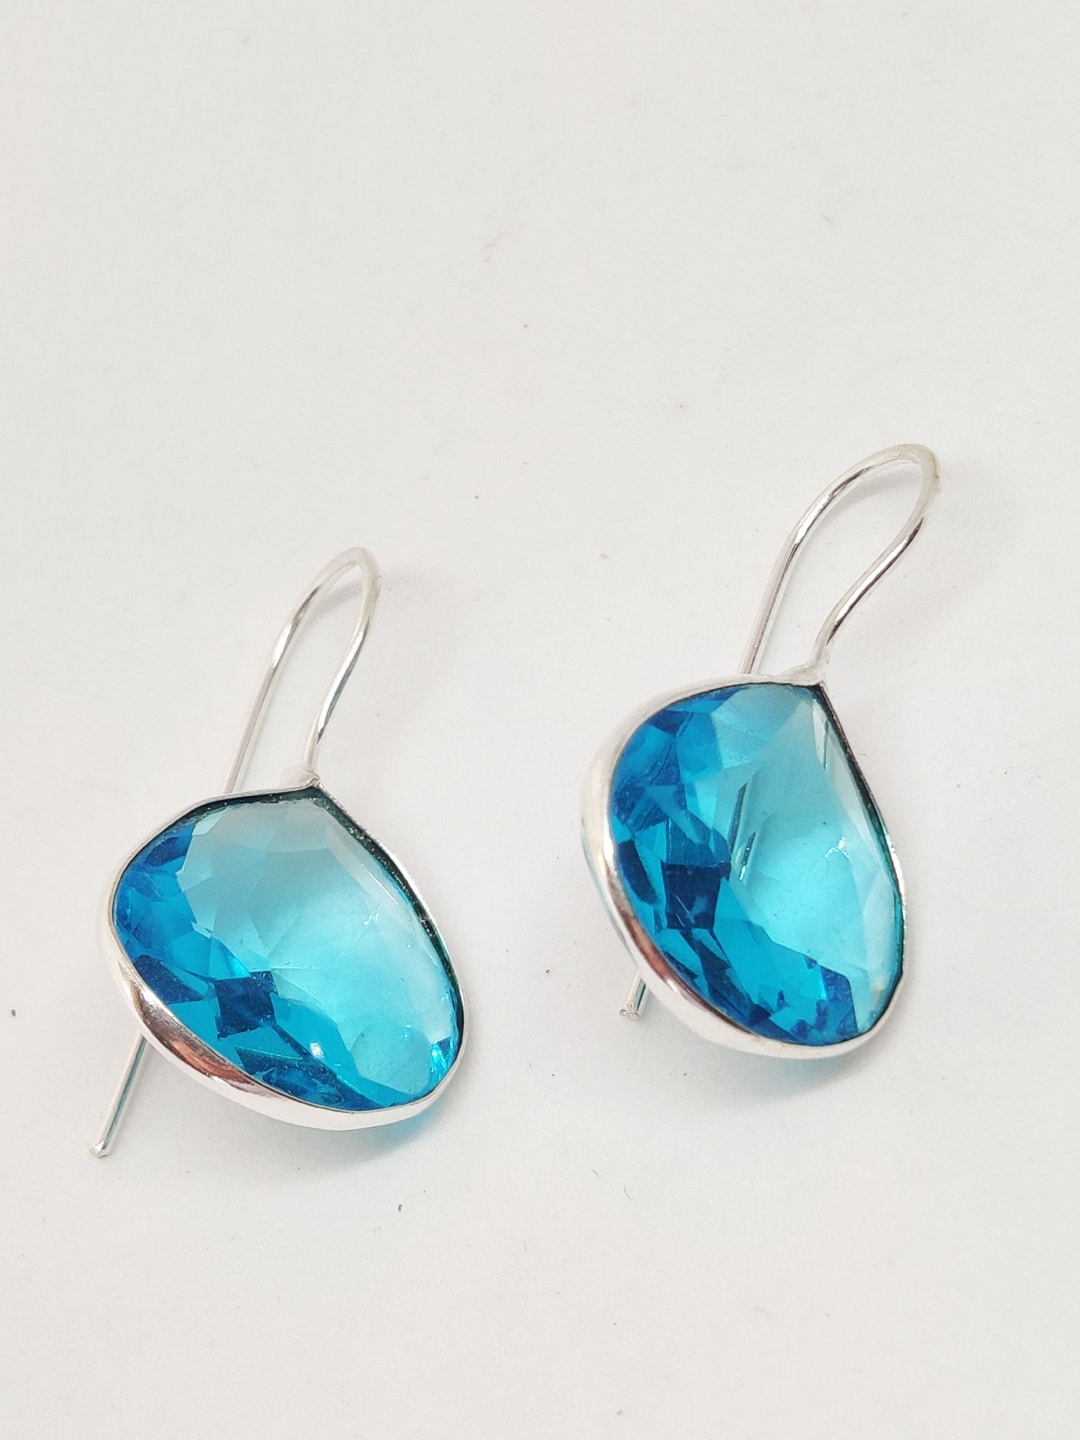 EL REGALO Blue Teardrop Shaped Studs Earrings - for Women and Girls
Style ID: 16851562